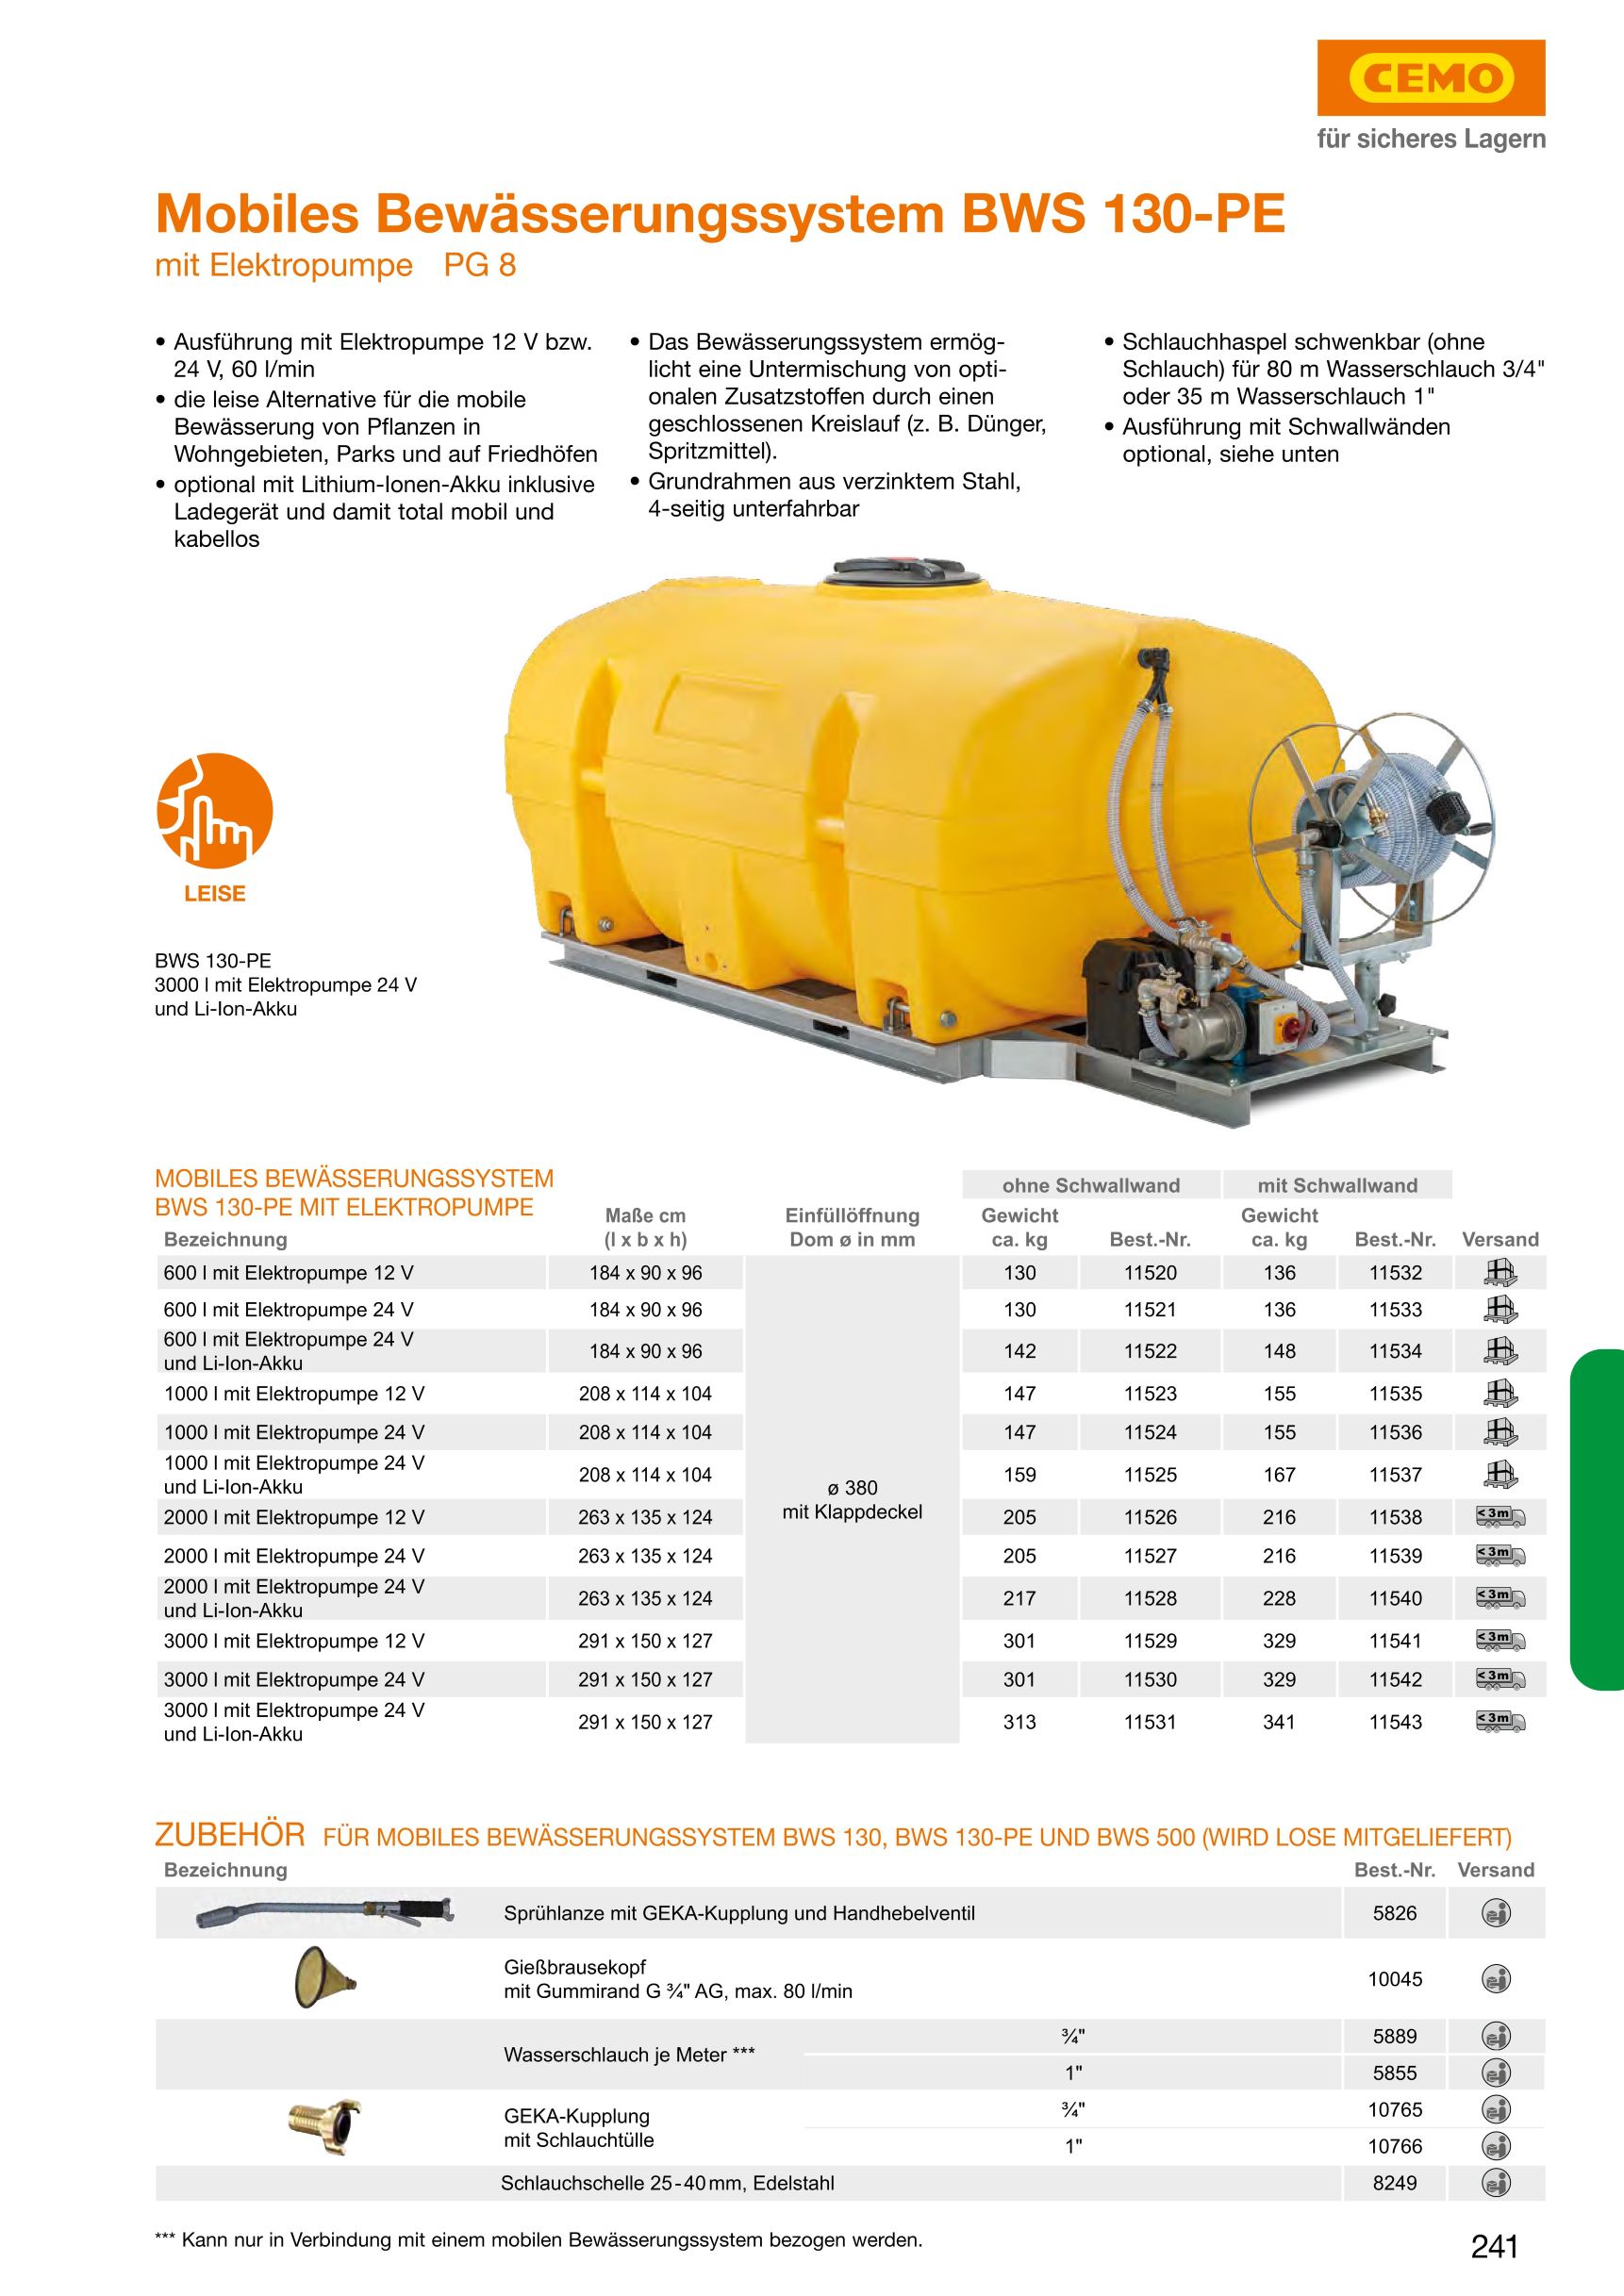 CEMO Mobiles Bewässerungssystem BWS 130-PE, 3000 l, 12 V Pumpe - 11529